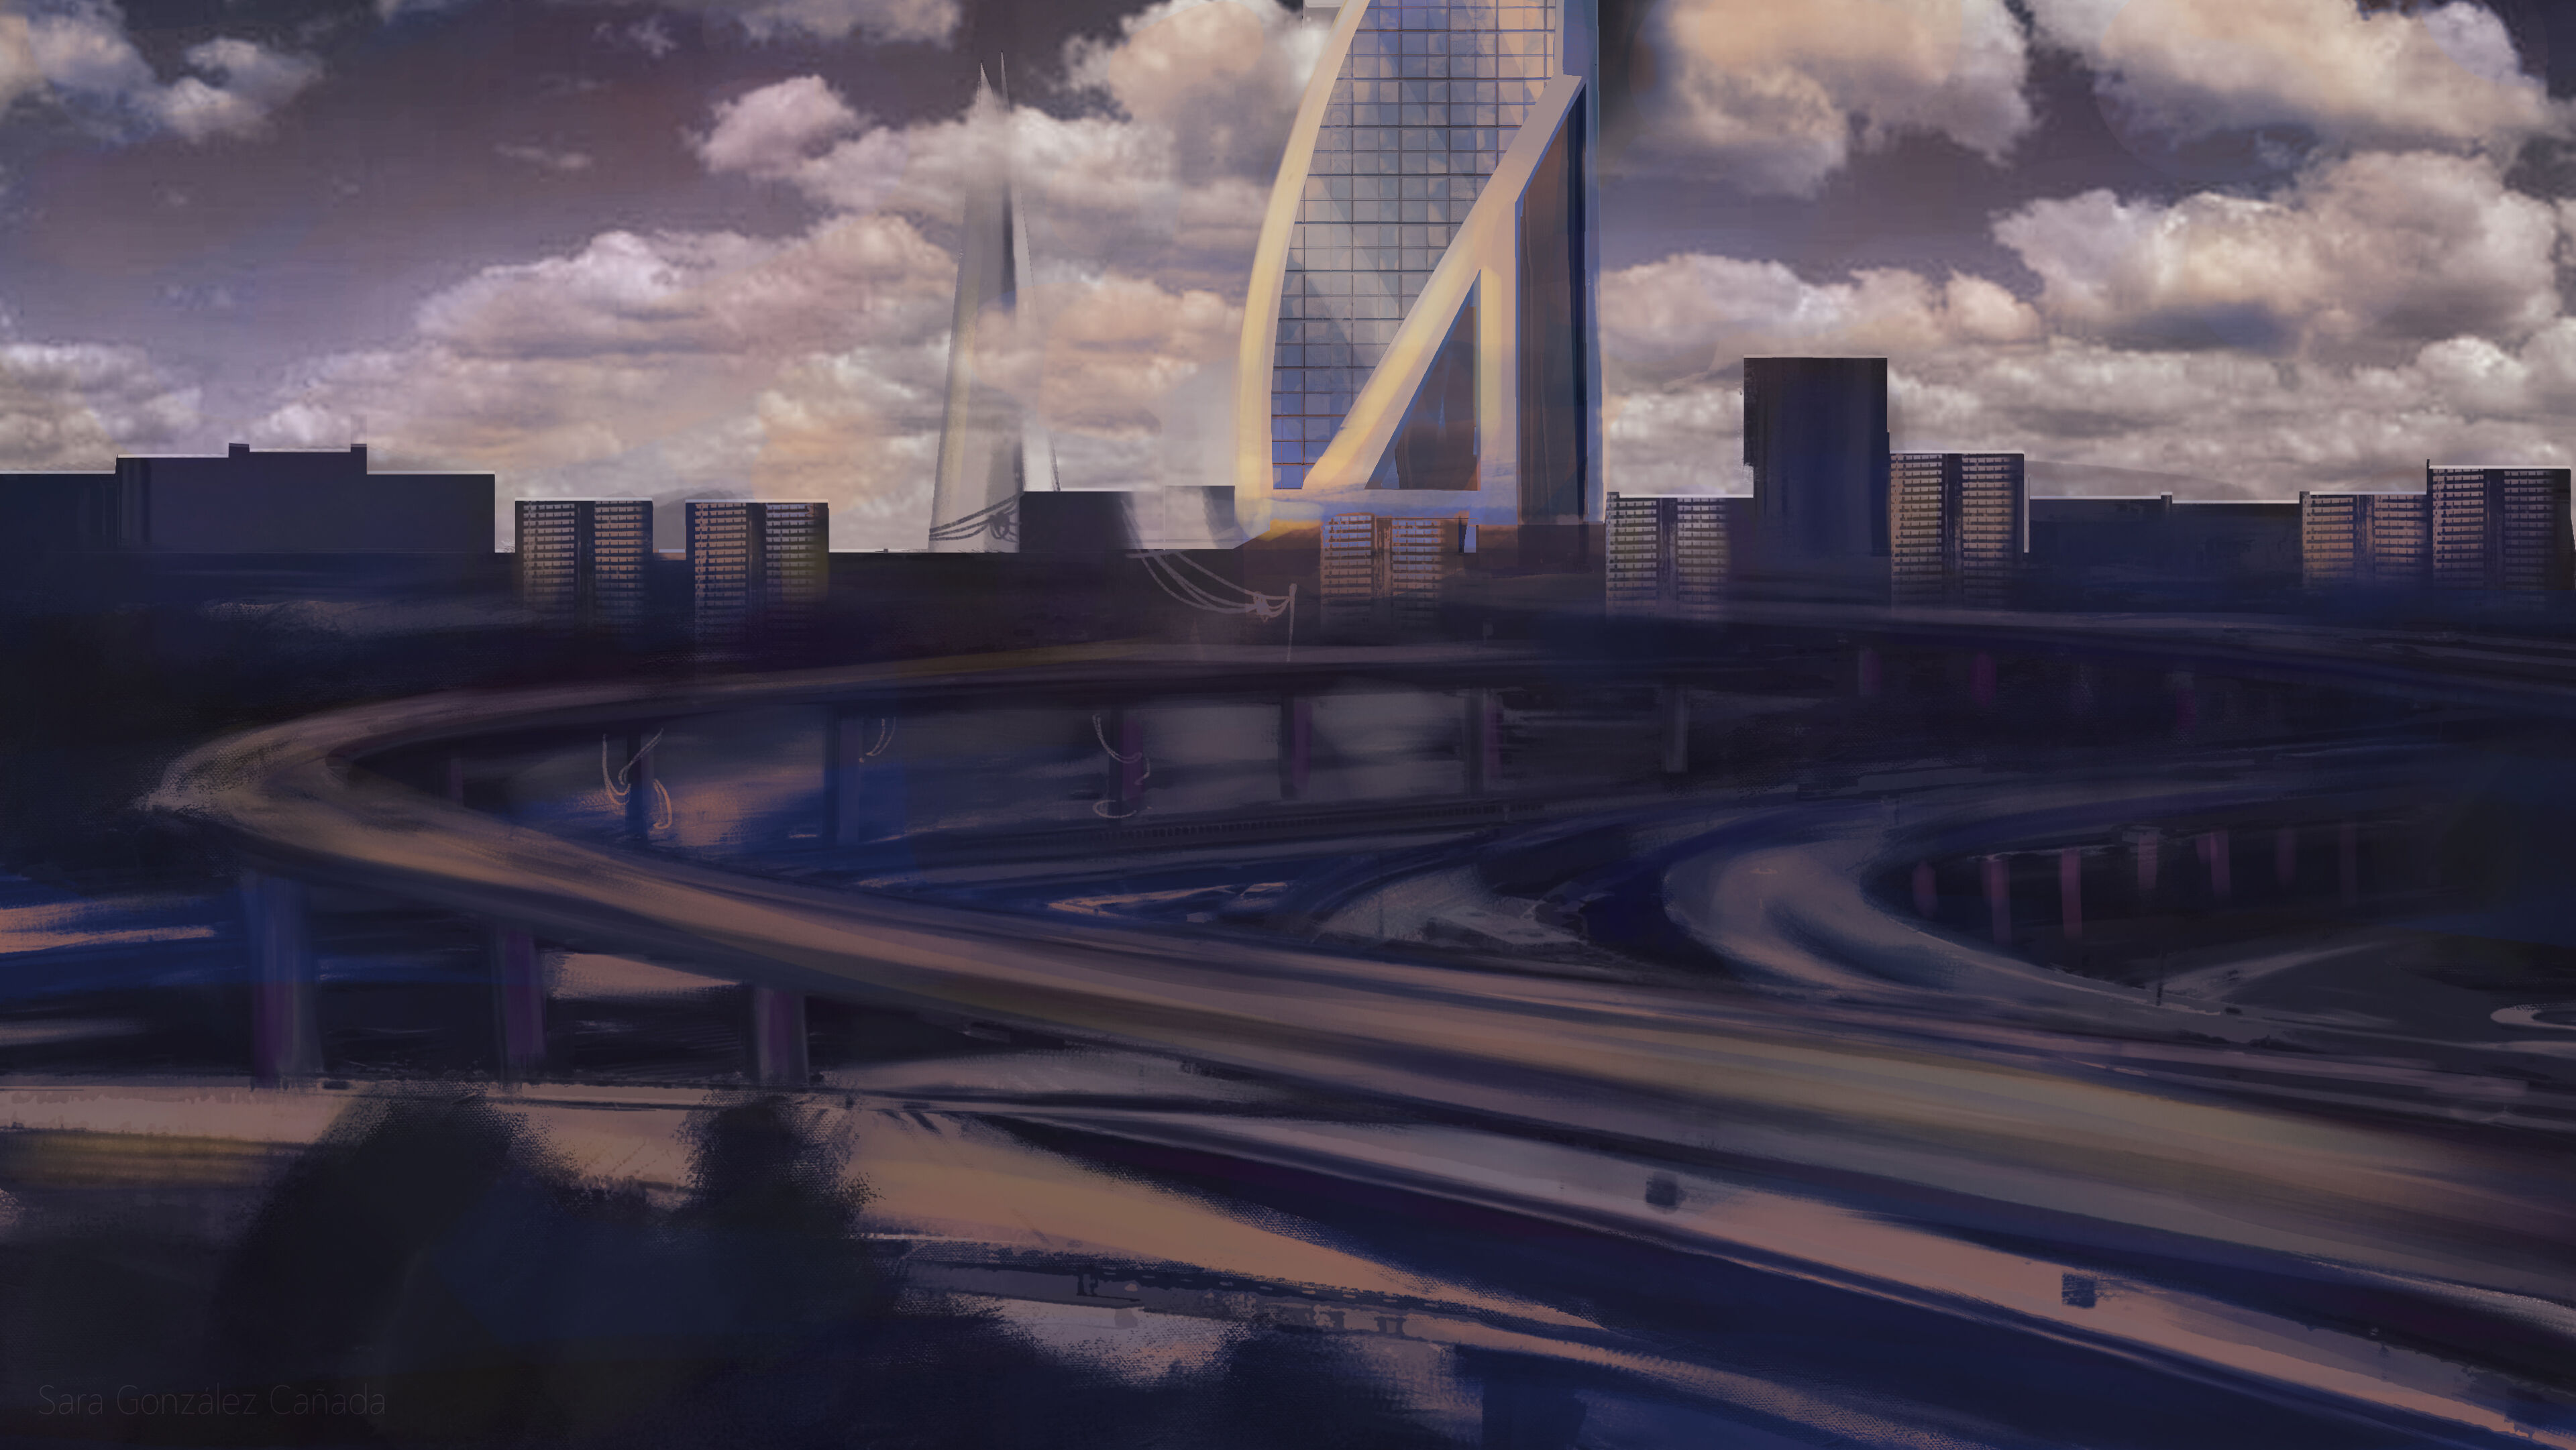 Representació artística d'una ciutat futurista al capvespre amb carreteres il·luminades i un gratacel destacat.